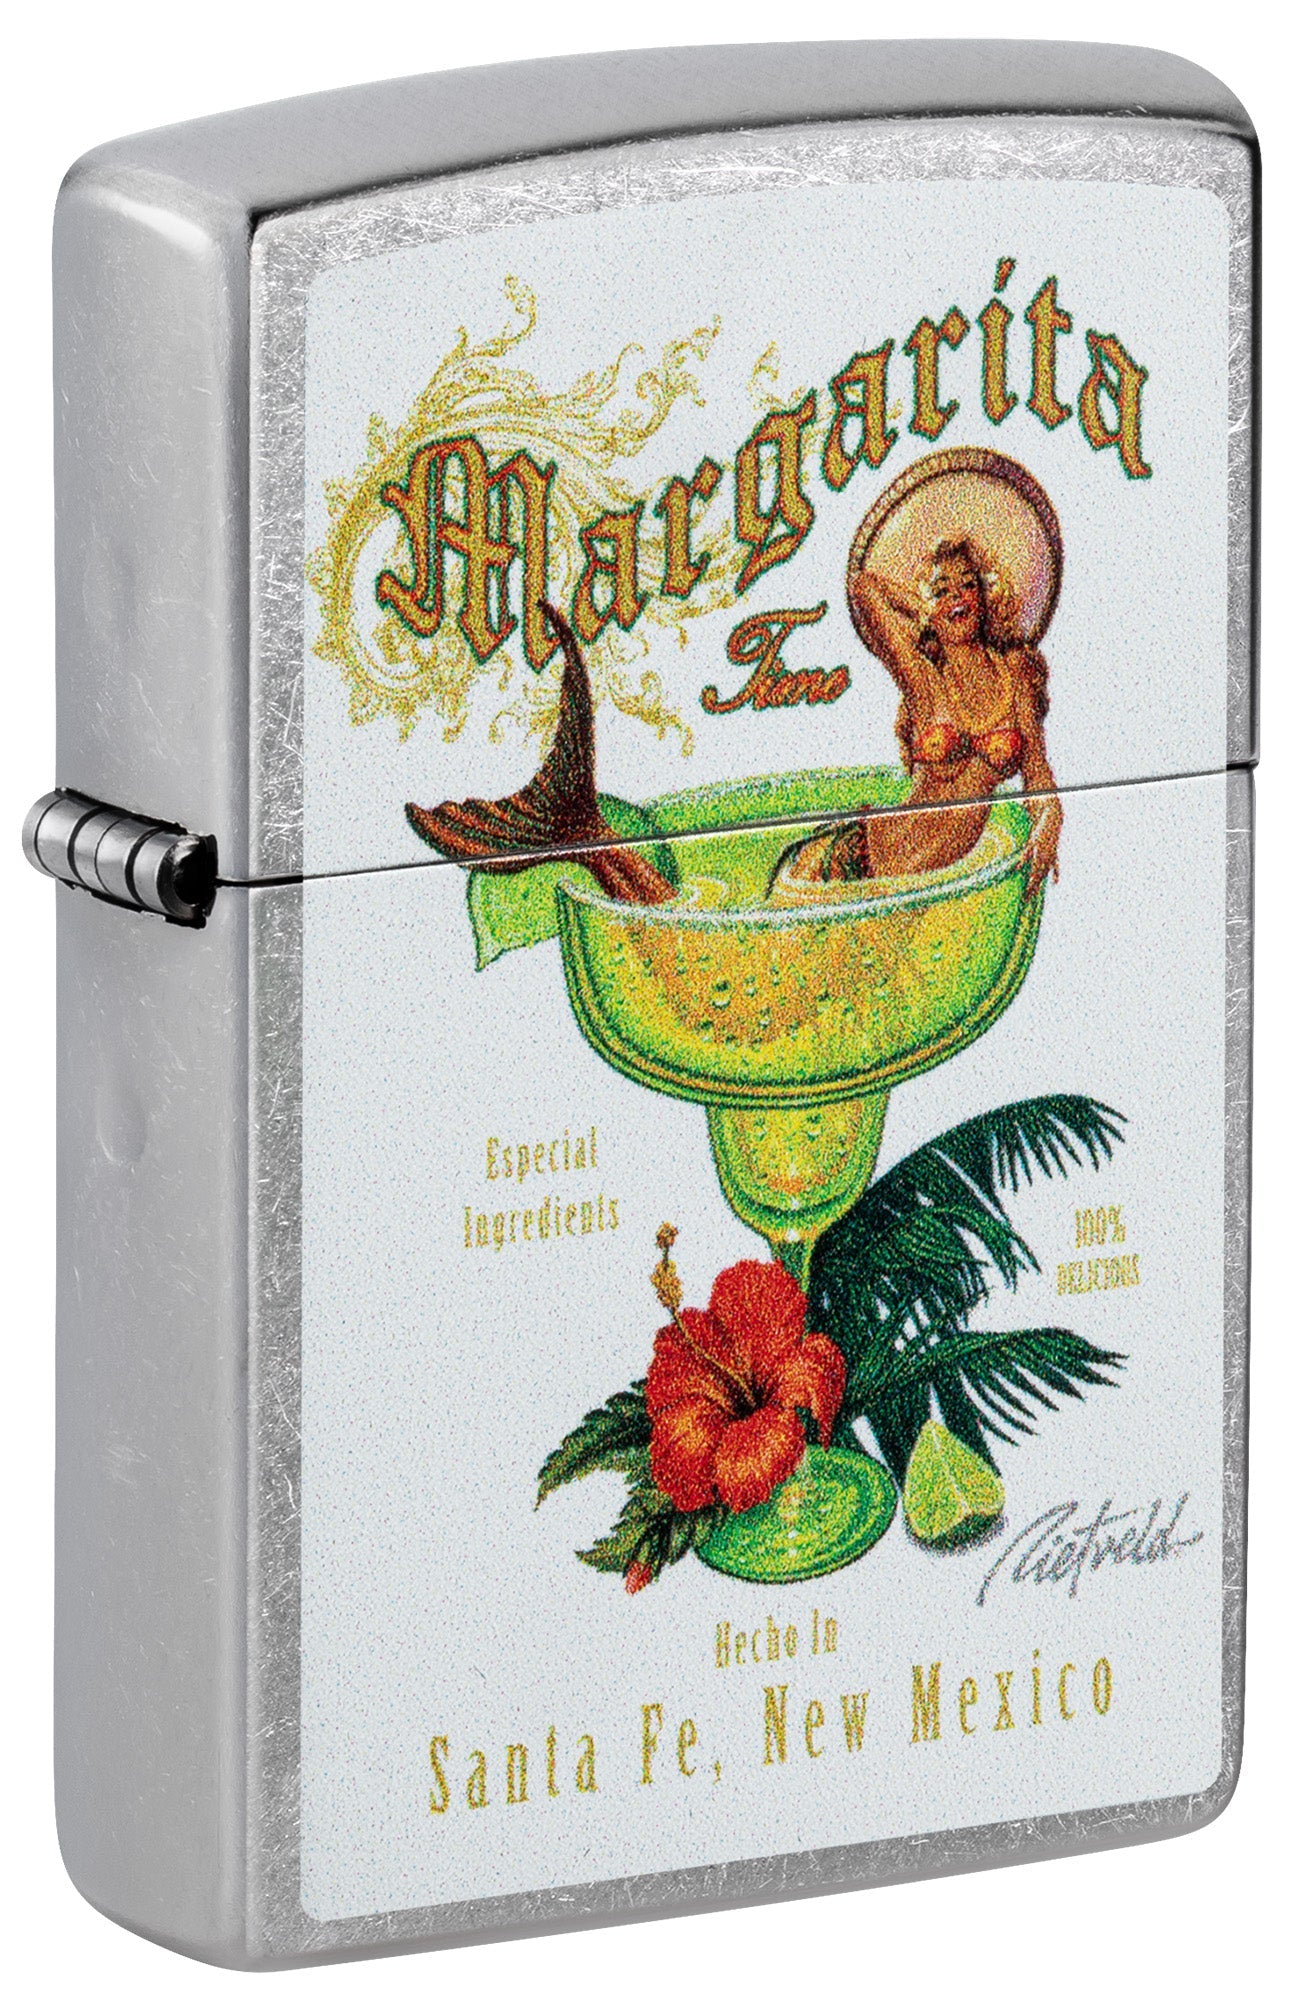 Zippo Lighter: Margarita Time by Rick Rietveld - Street Chrome 81530